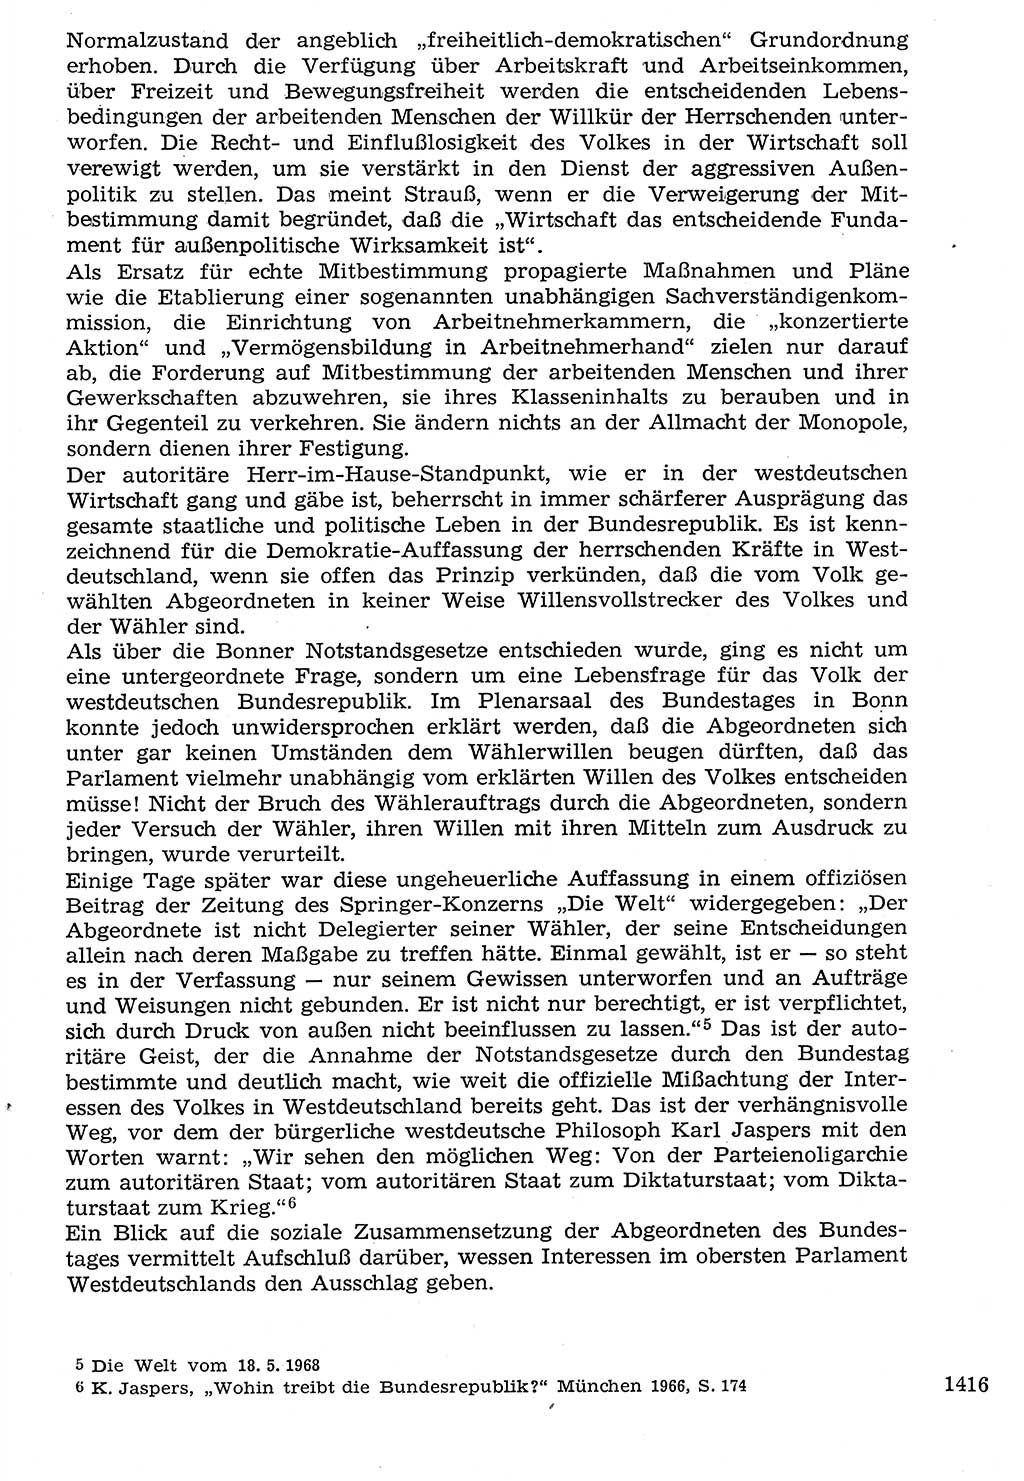 Staat und Recht (StuR), 17. Jahrgang [Deutsche Demokratische Republik (DDR)] 1968, Seite 1416 (StuR DDR 1968, S. 1416)